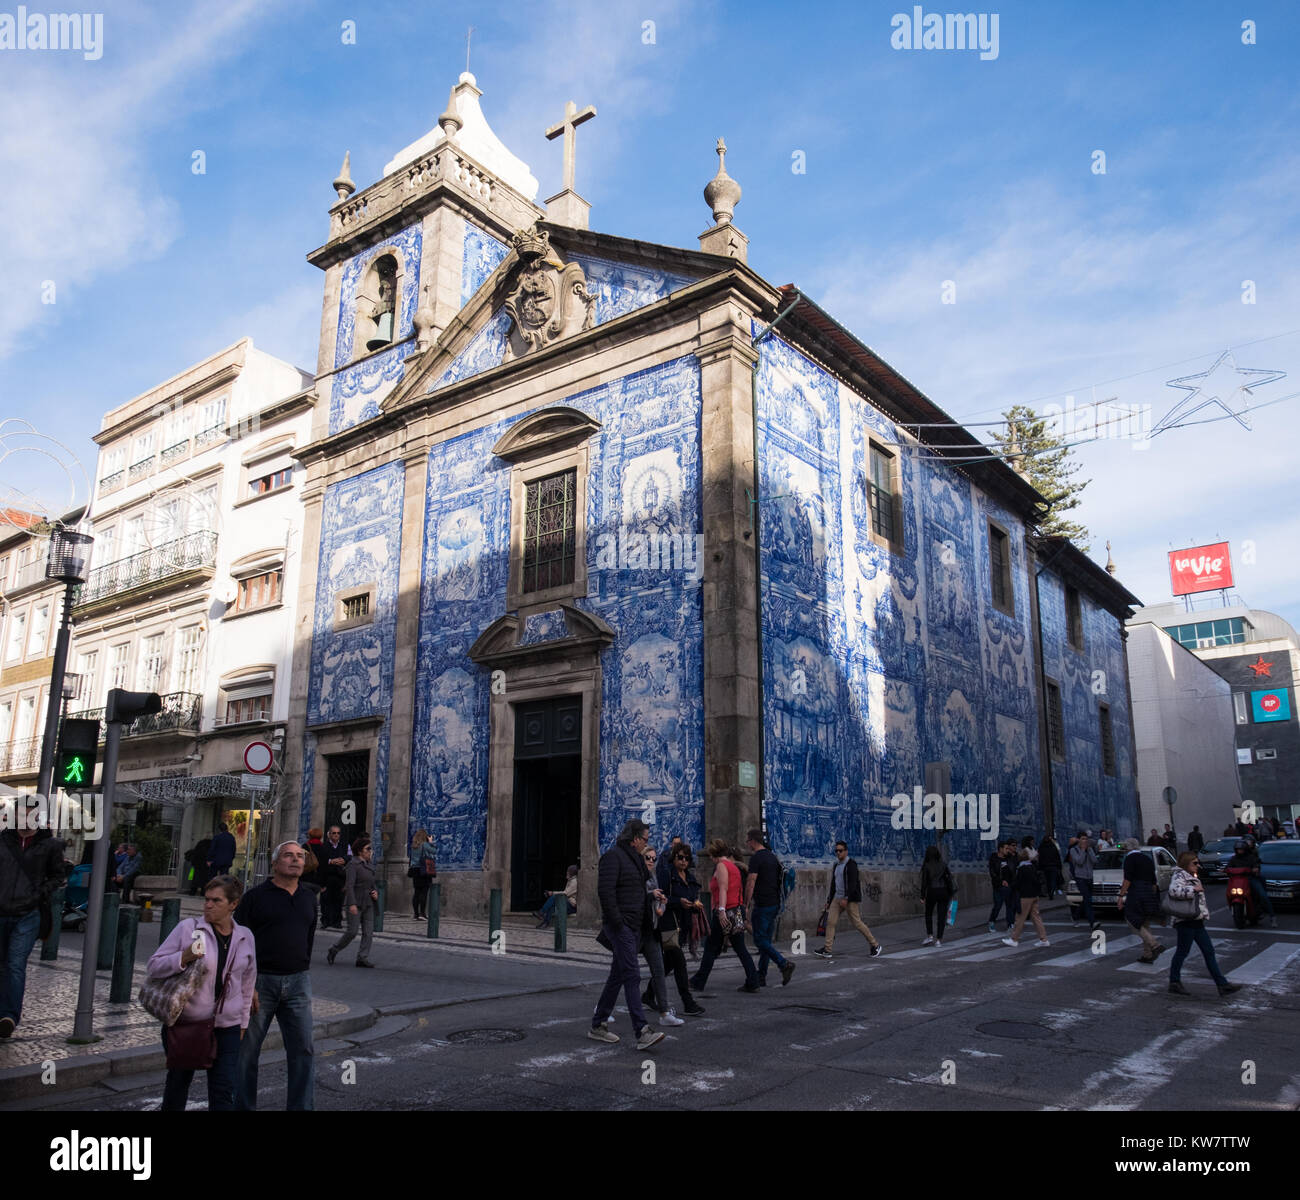 Azul icónico azulejos portugueses en un edificio en el centro de la ciudad de Oporto. Foto de stock